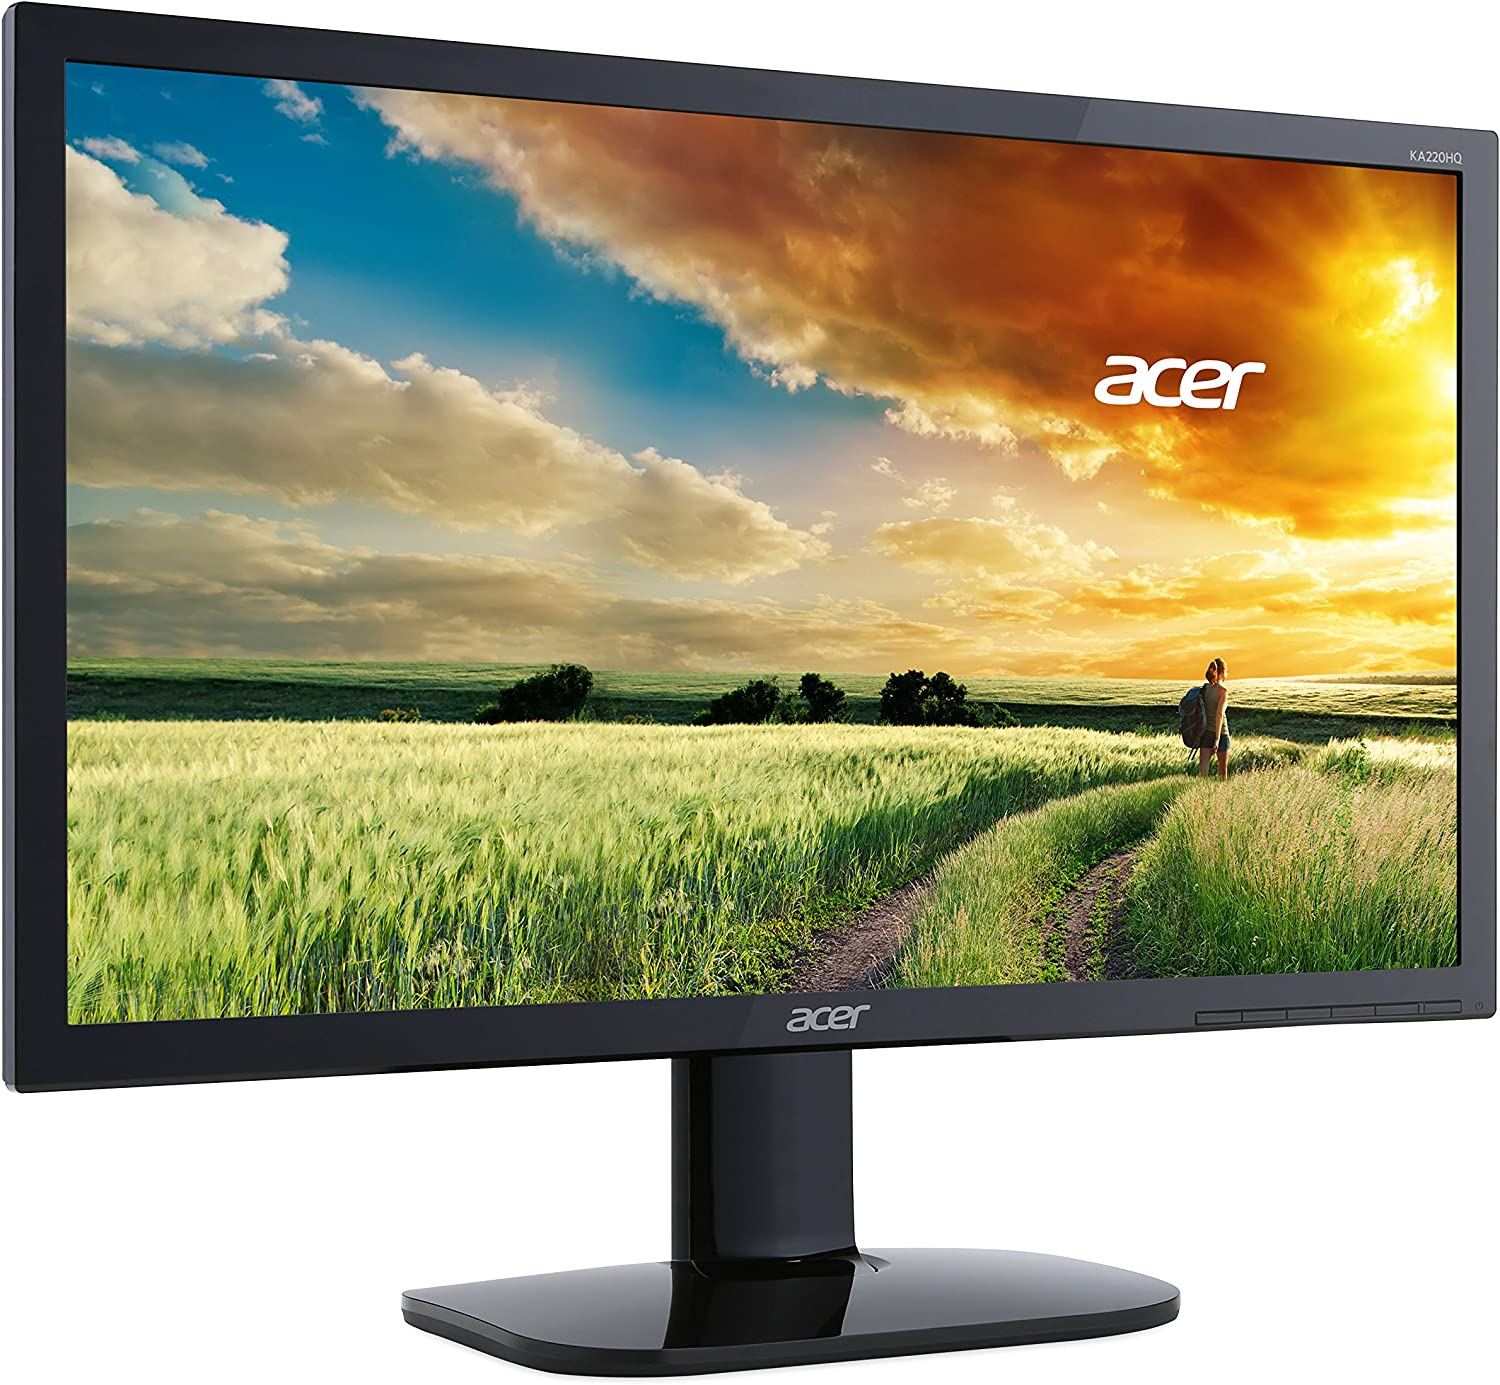 Acer Bi Full HD (1920 X 1080) TN Monitor (HDMI & VGA Port)